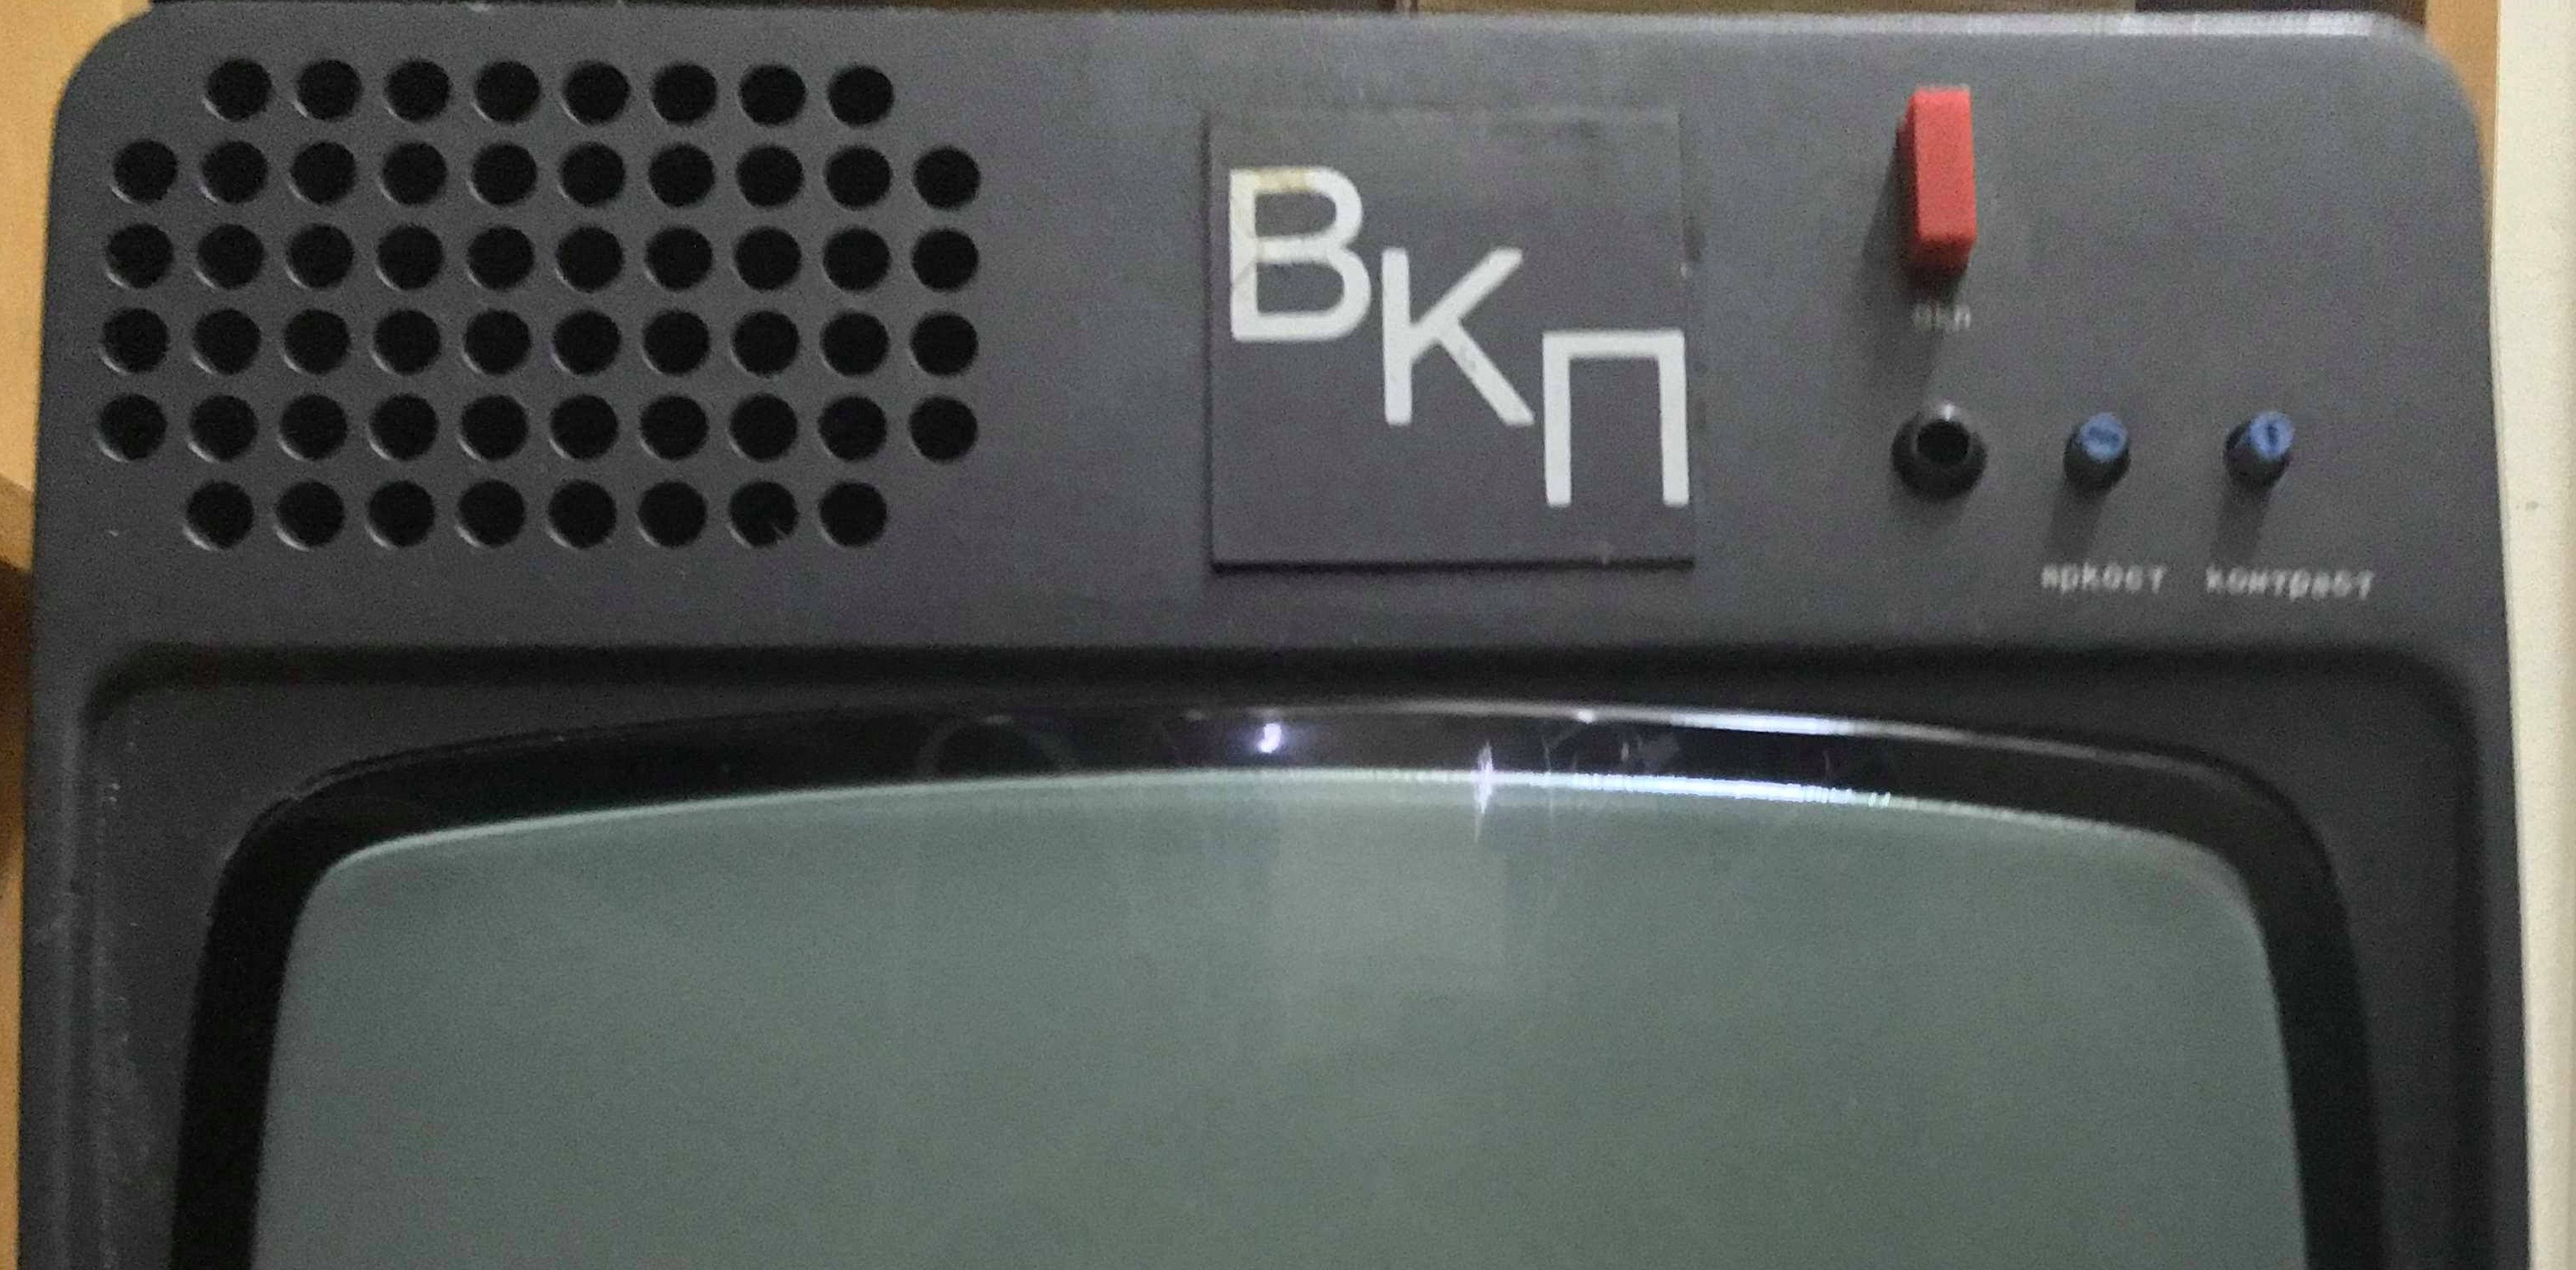 Български монитор ВКП 170